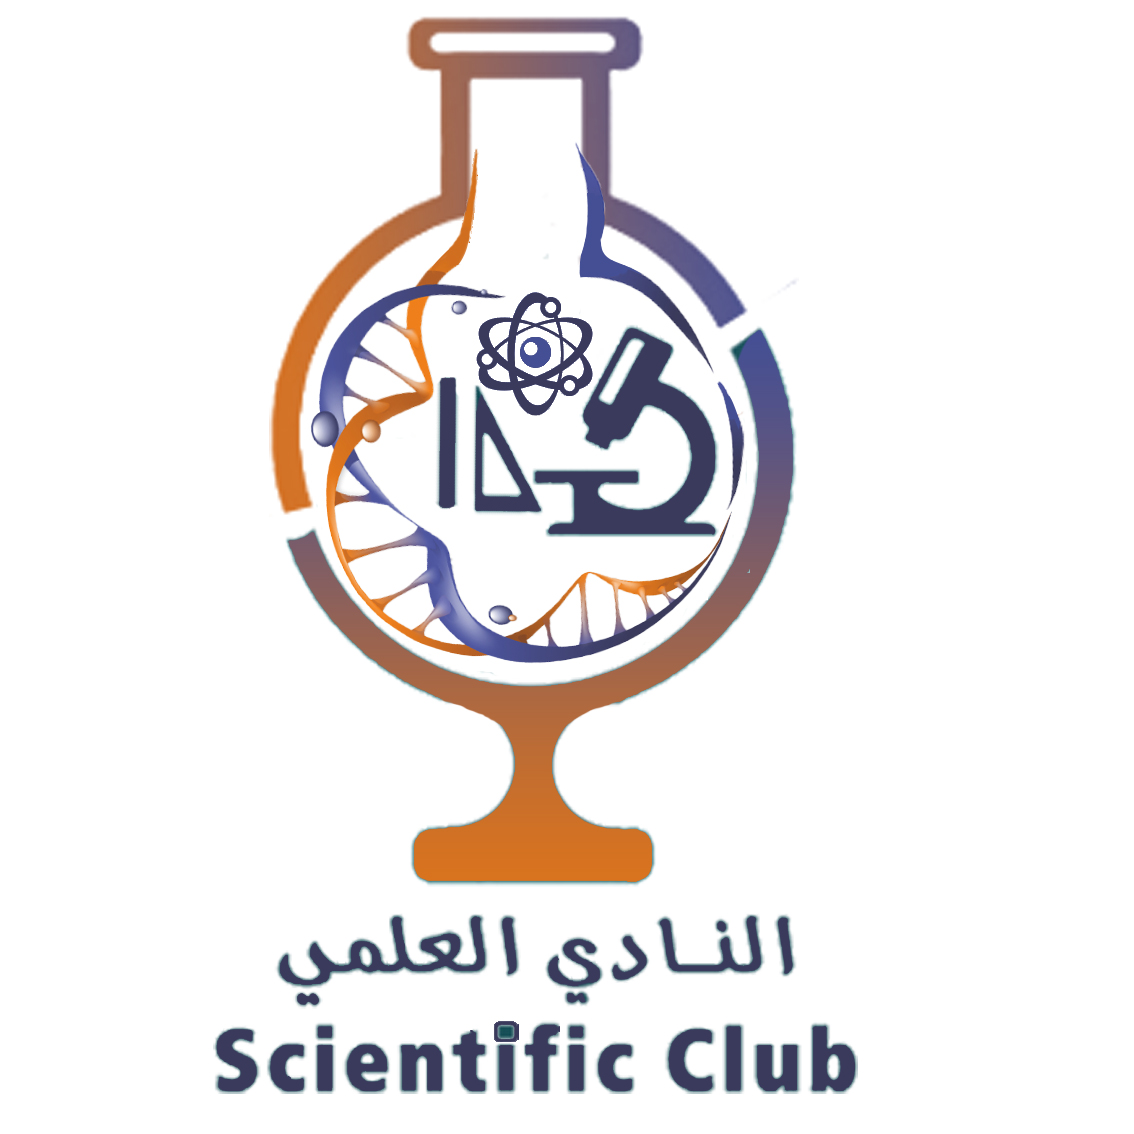 Scientific Club